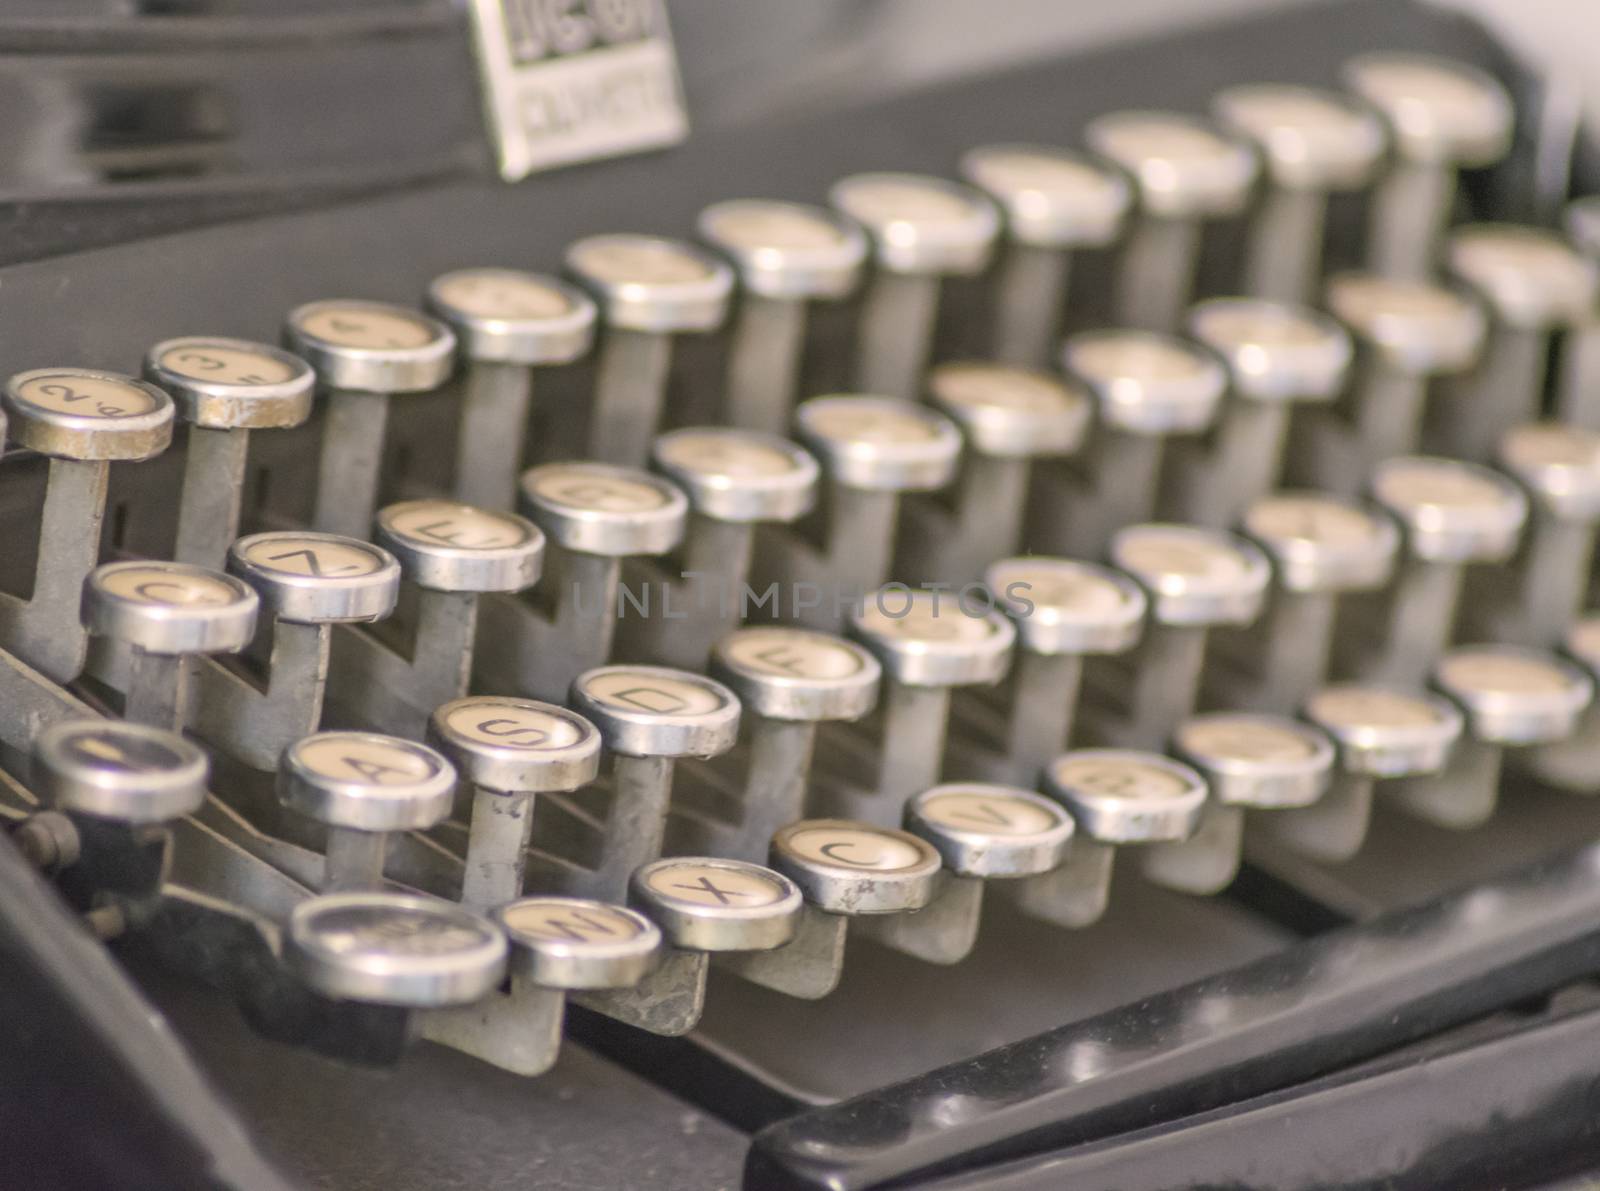 Close up of an old typewriter's keys